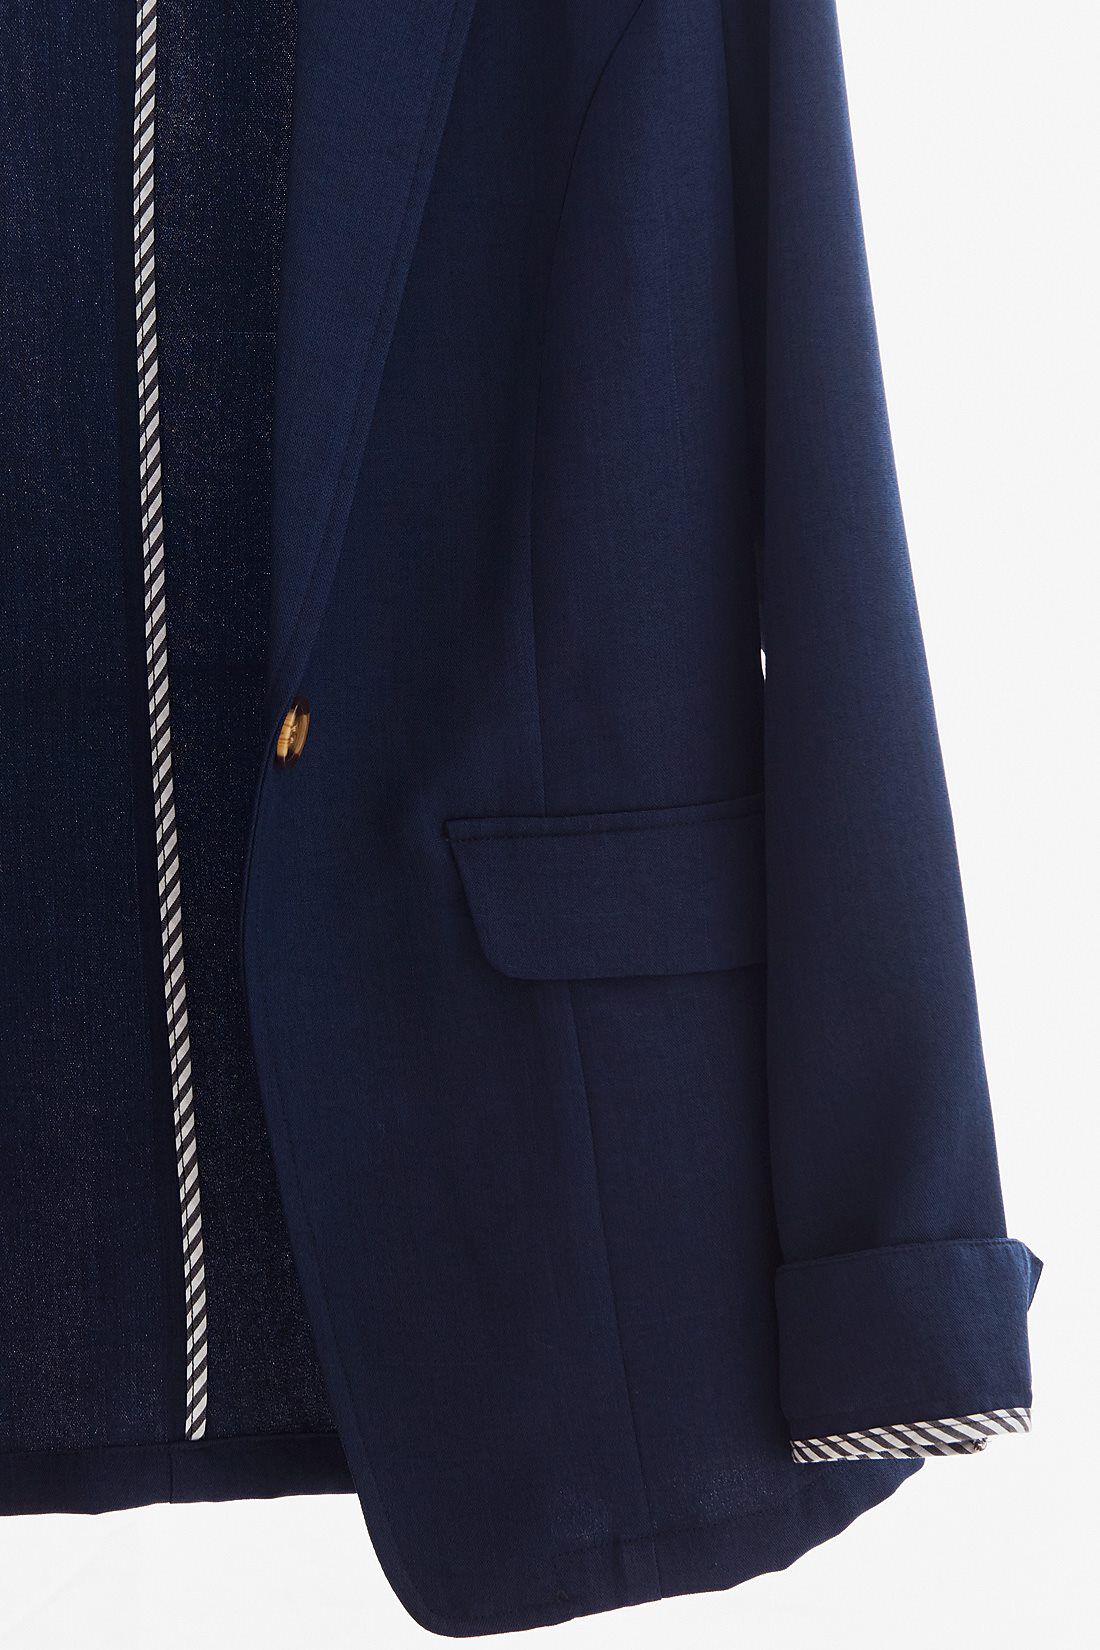 DRECO by IEDIT|DRECO　リネンライクな涼感のある　軽やかサマージャケット<ネイビー〉|薄くて軽い素材で、夏に◎。